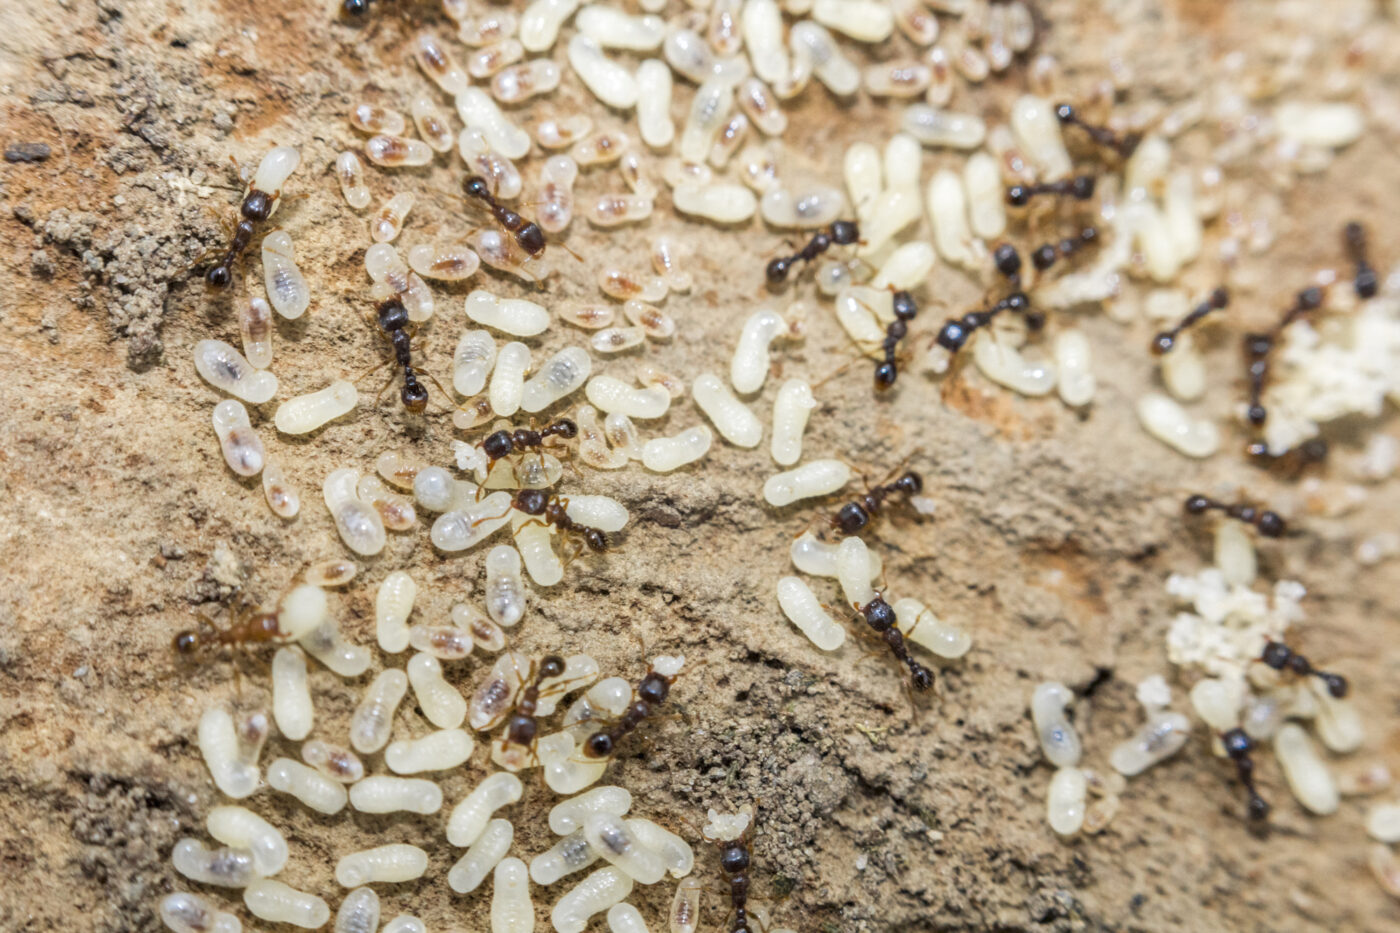 Ants life cycle.